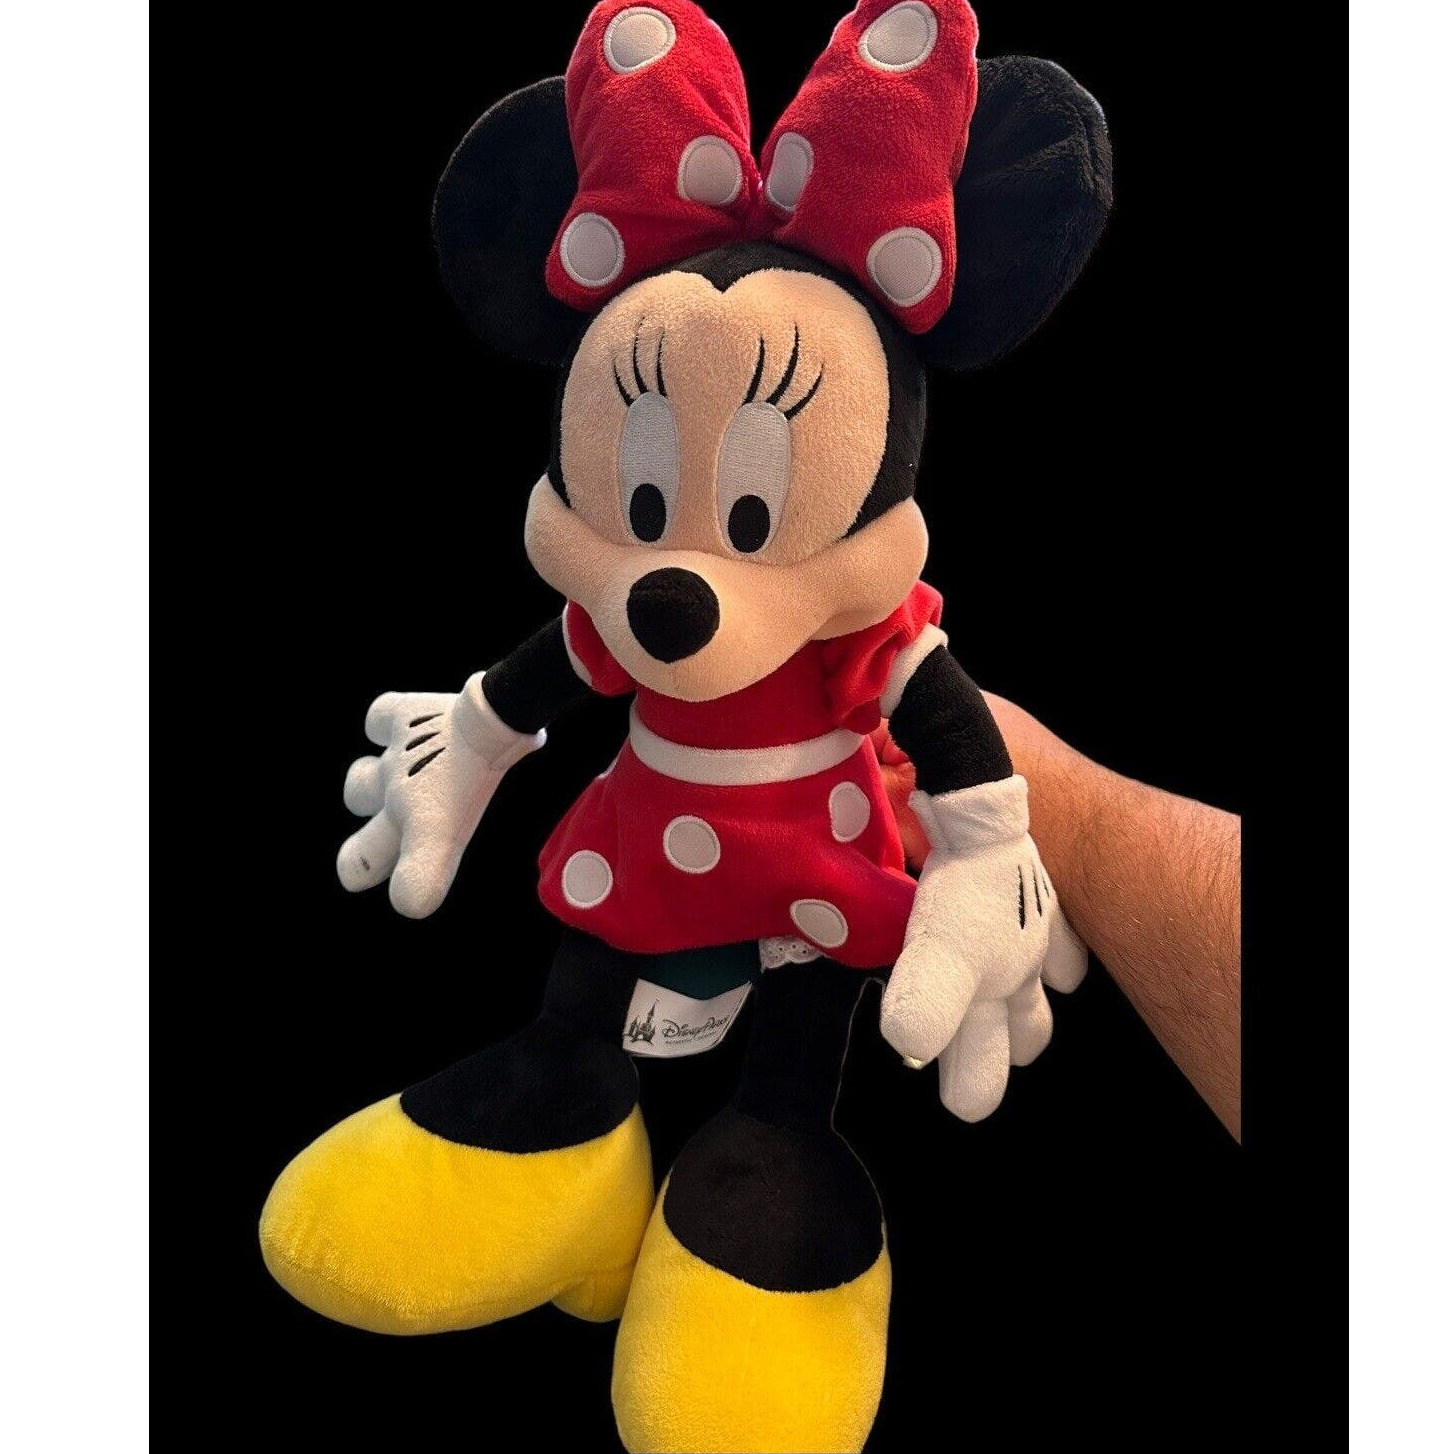 Minnie Mouse Plush, Authentic Disney Parks Original, 12 inches